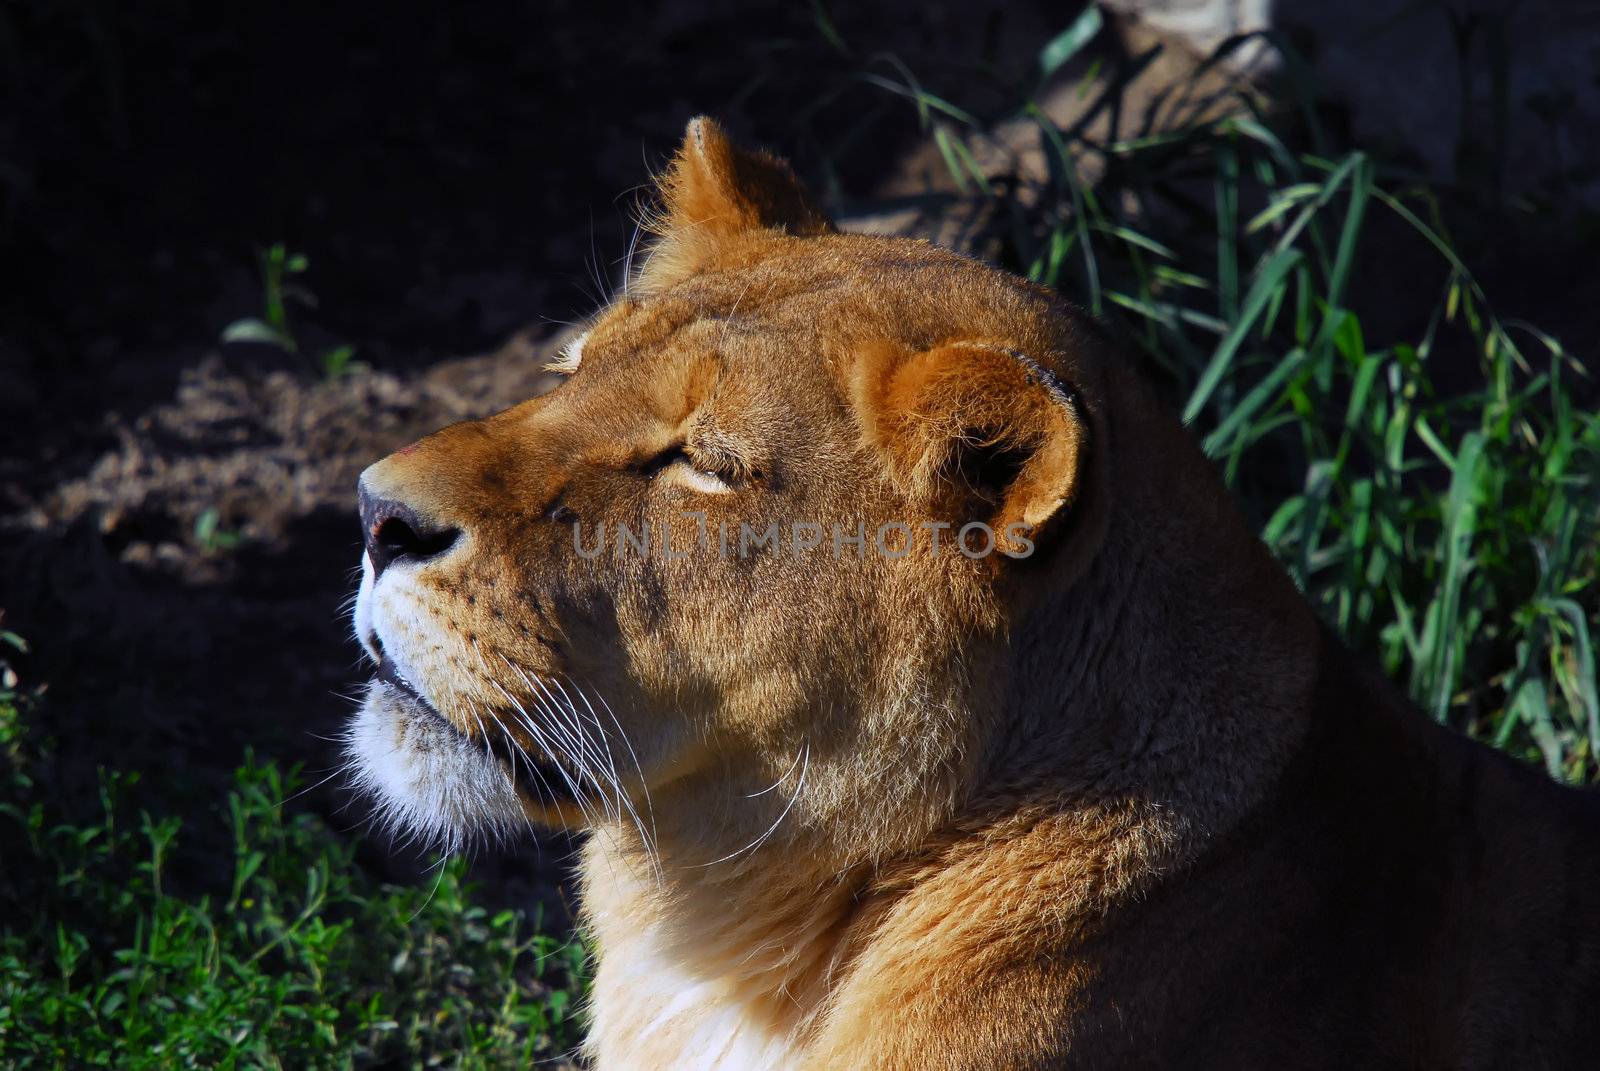 Female lion by nialat